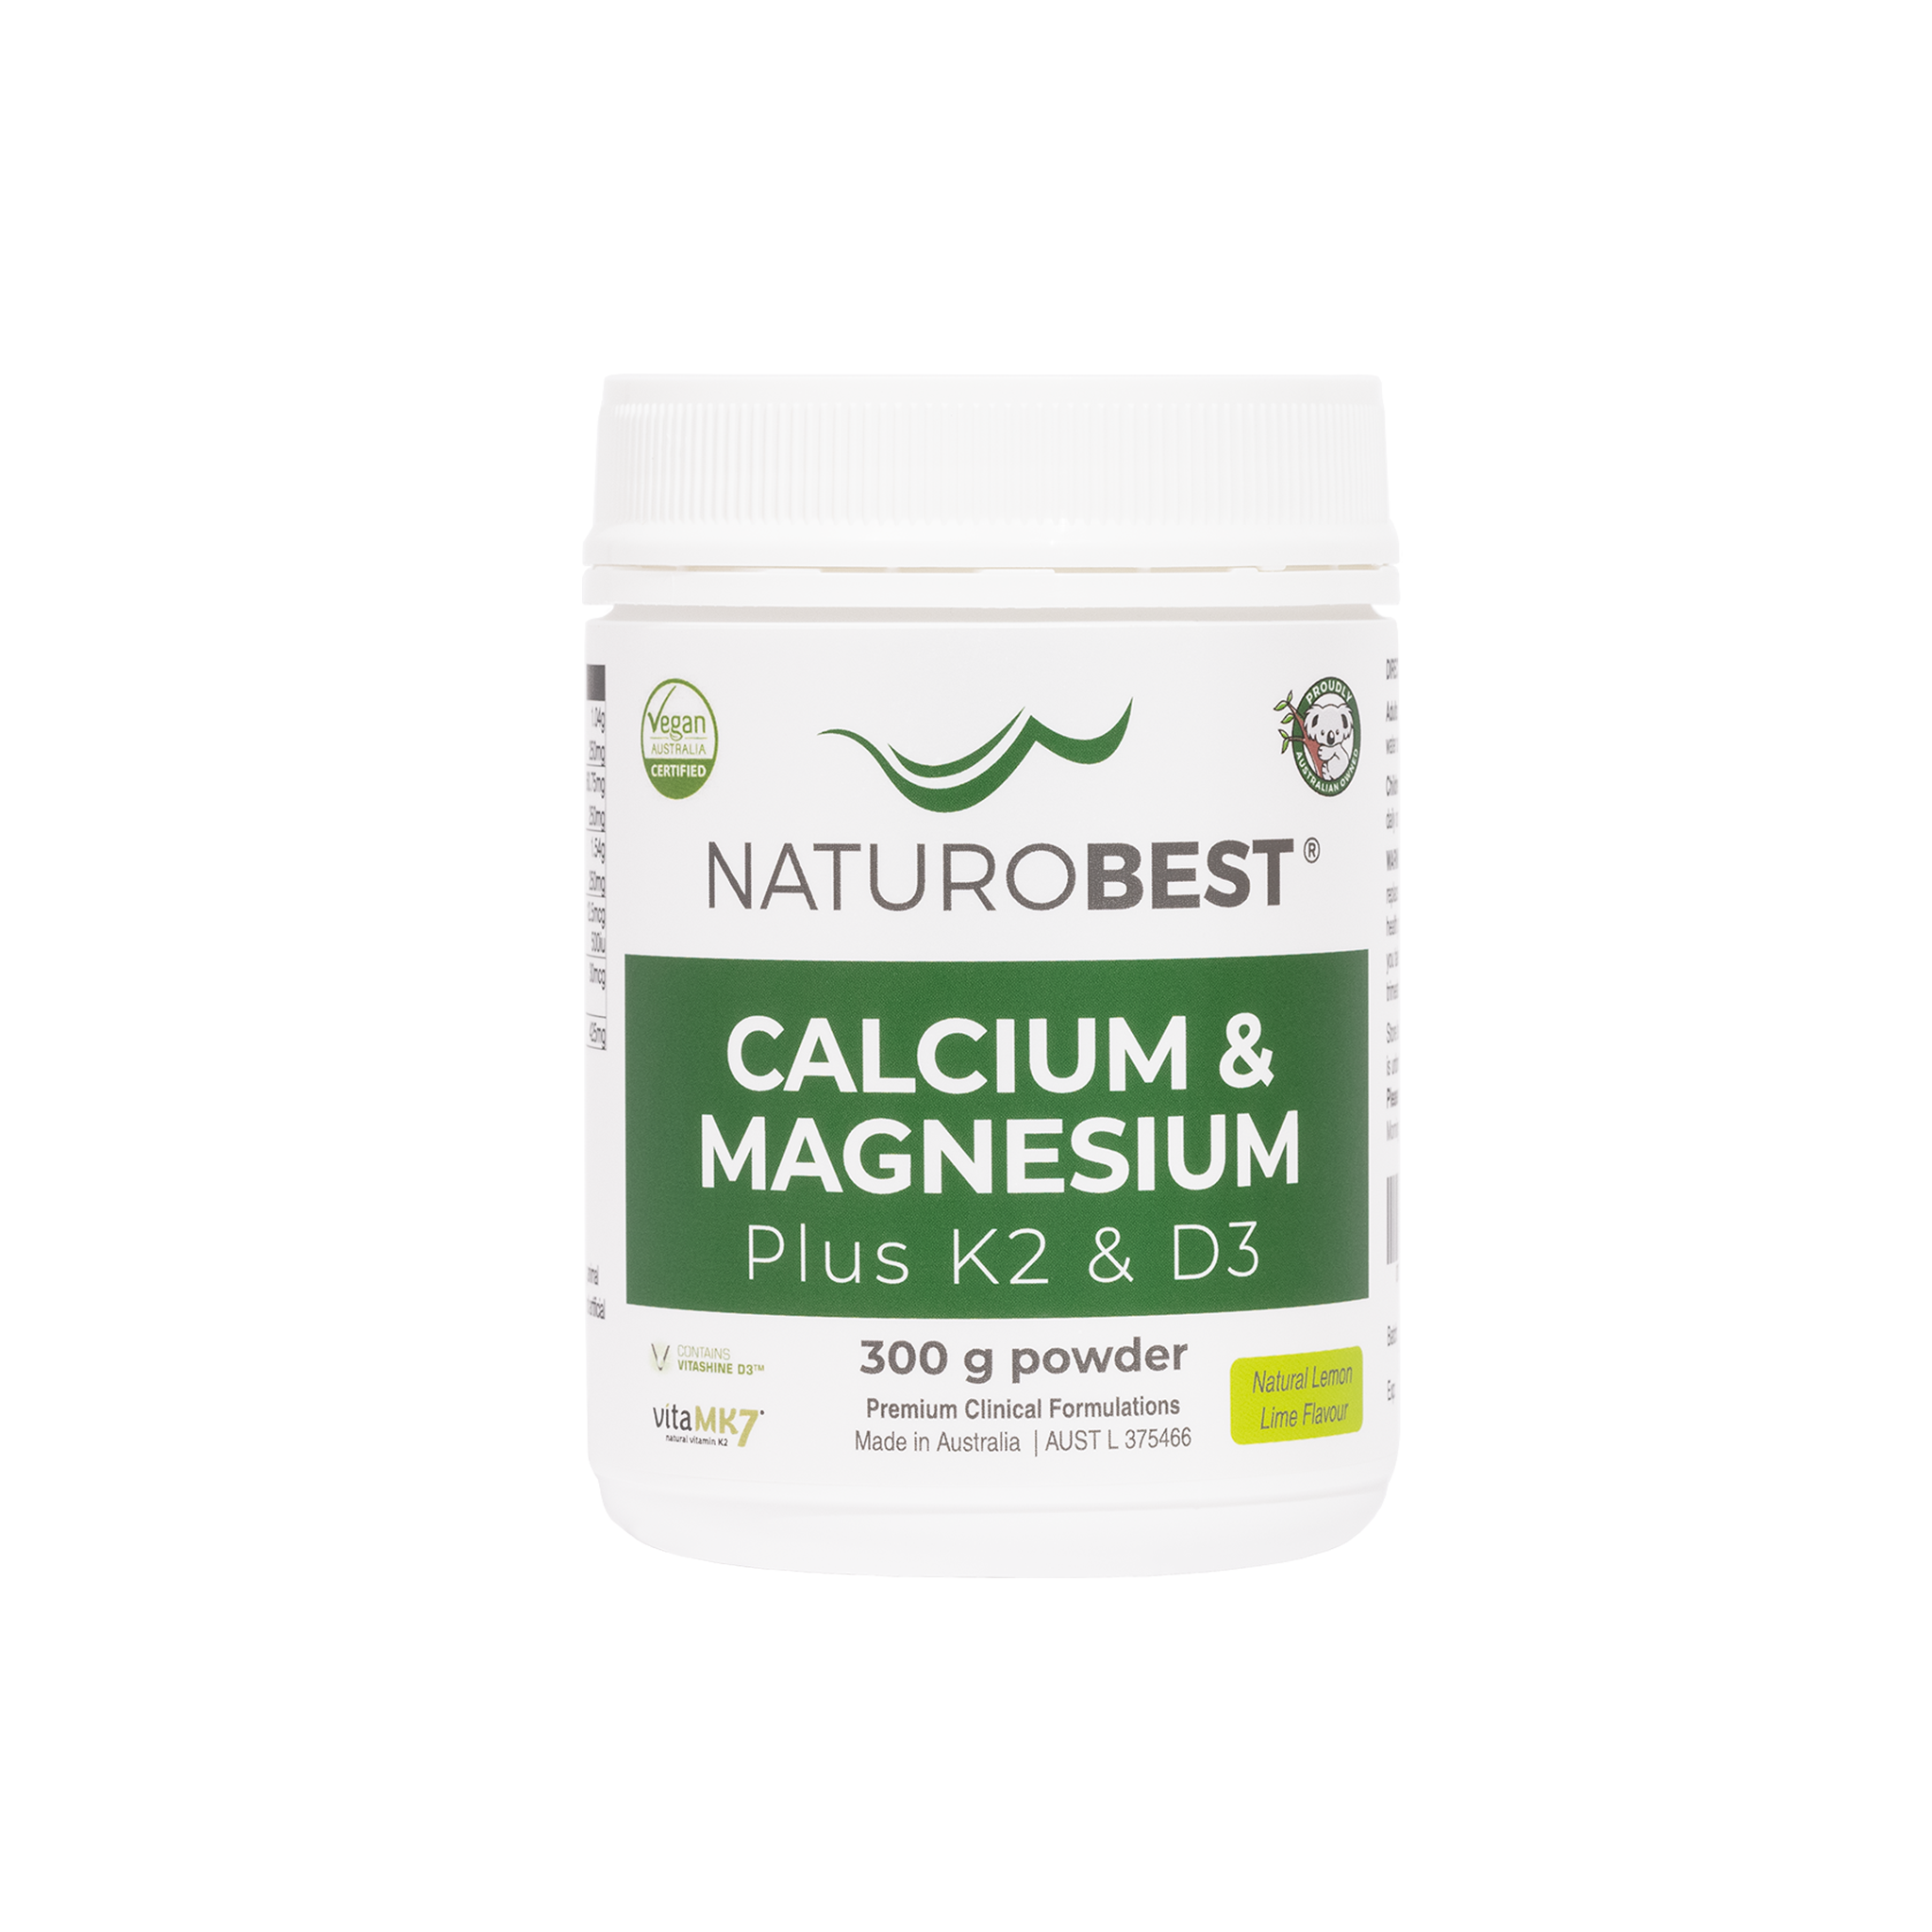 Calcium & Magnesium Plus K2 & D3 300gms - Carton of 21 bottles - Wholesale